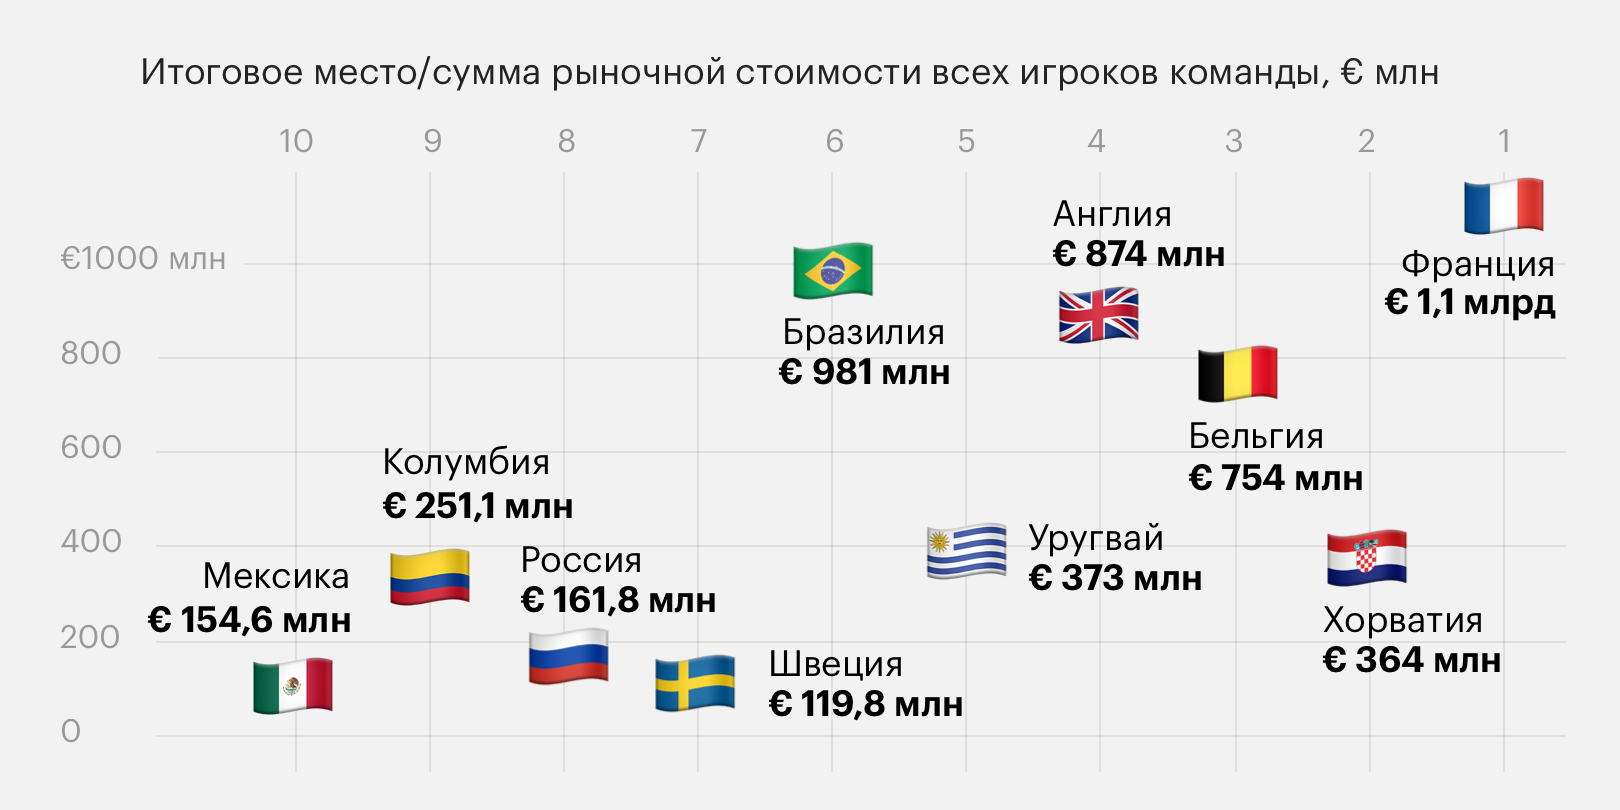 Чемпионат мира в России. Главные цифры